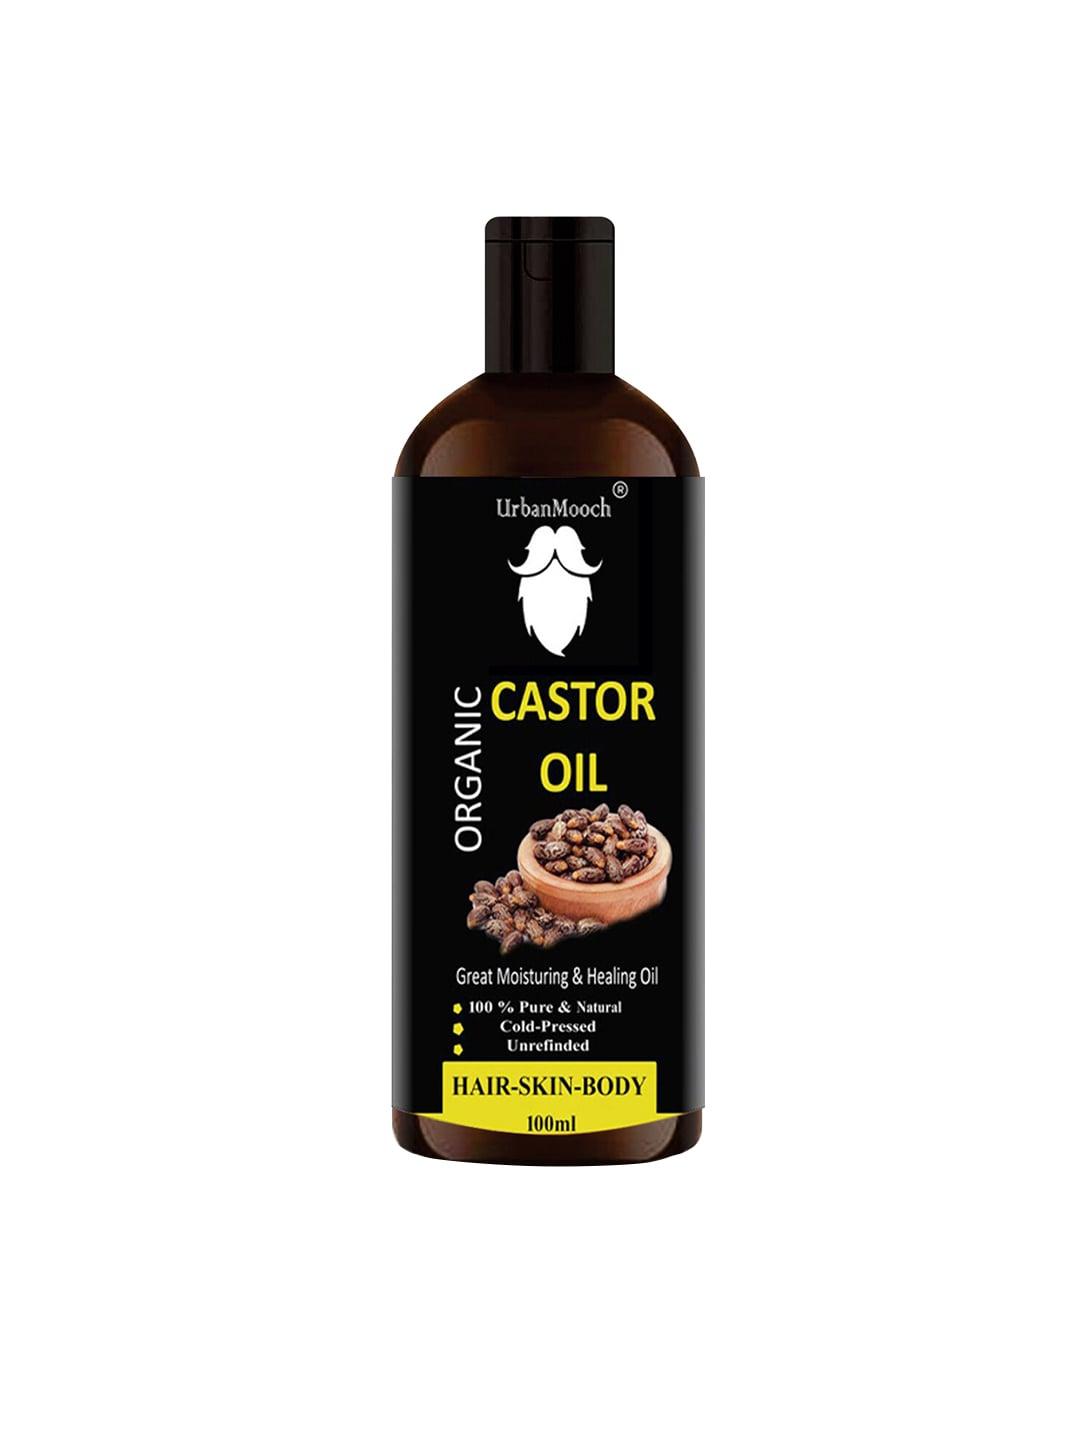 UrbanMooch Castor Oil for Hair & Skin- 100ml